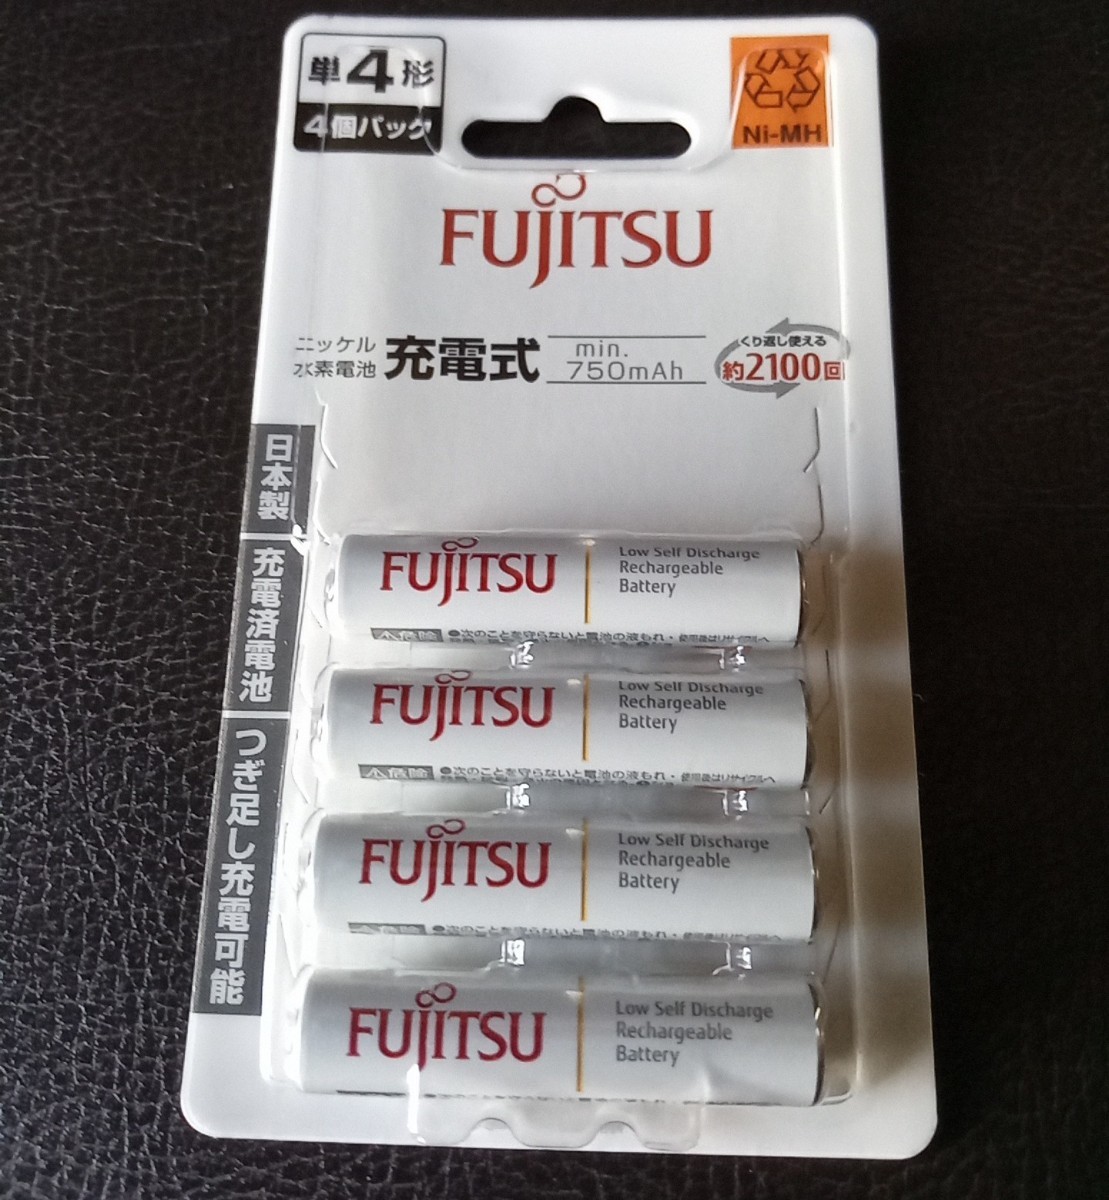 日本製 富士通 単4形 ニッケル水素充電池 min.750mAh エネループ互換 4本パック FDK Fujitsu eneloop HR-4UTC(4B) 単四 未開封新品の画像1